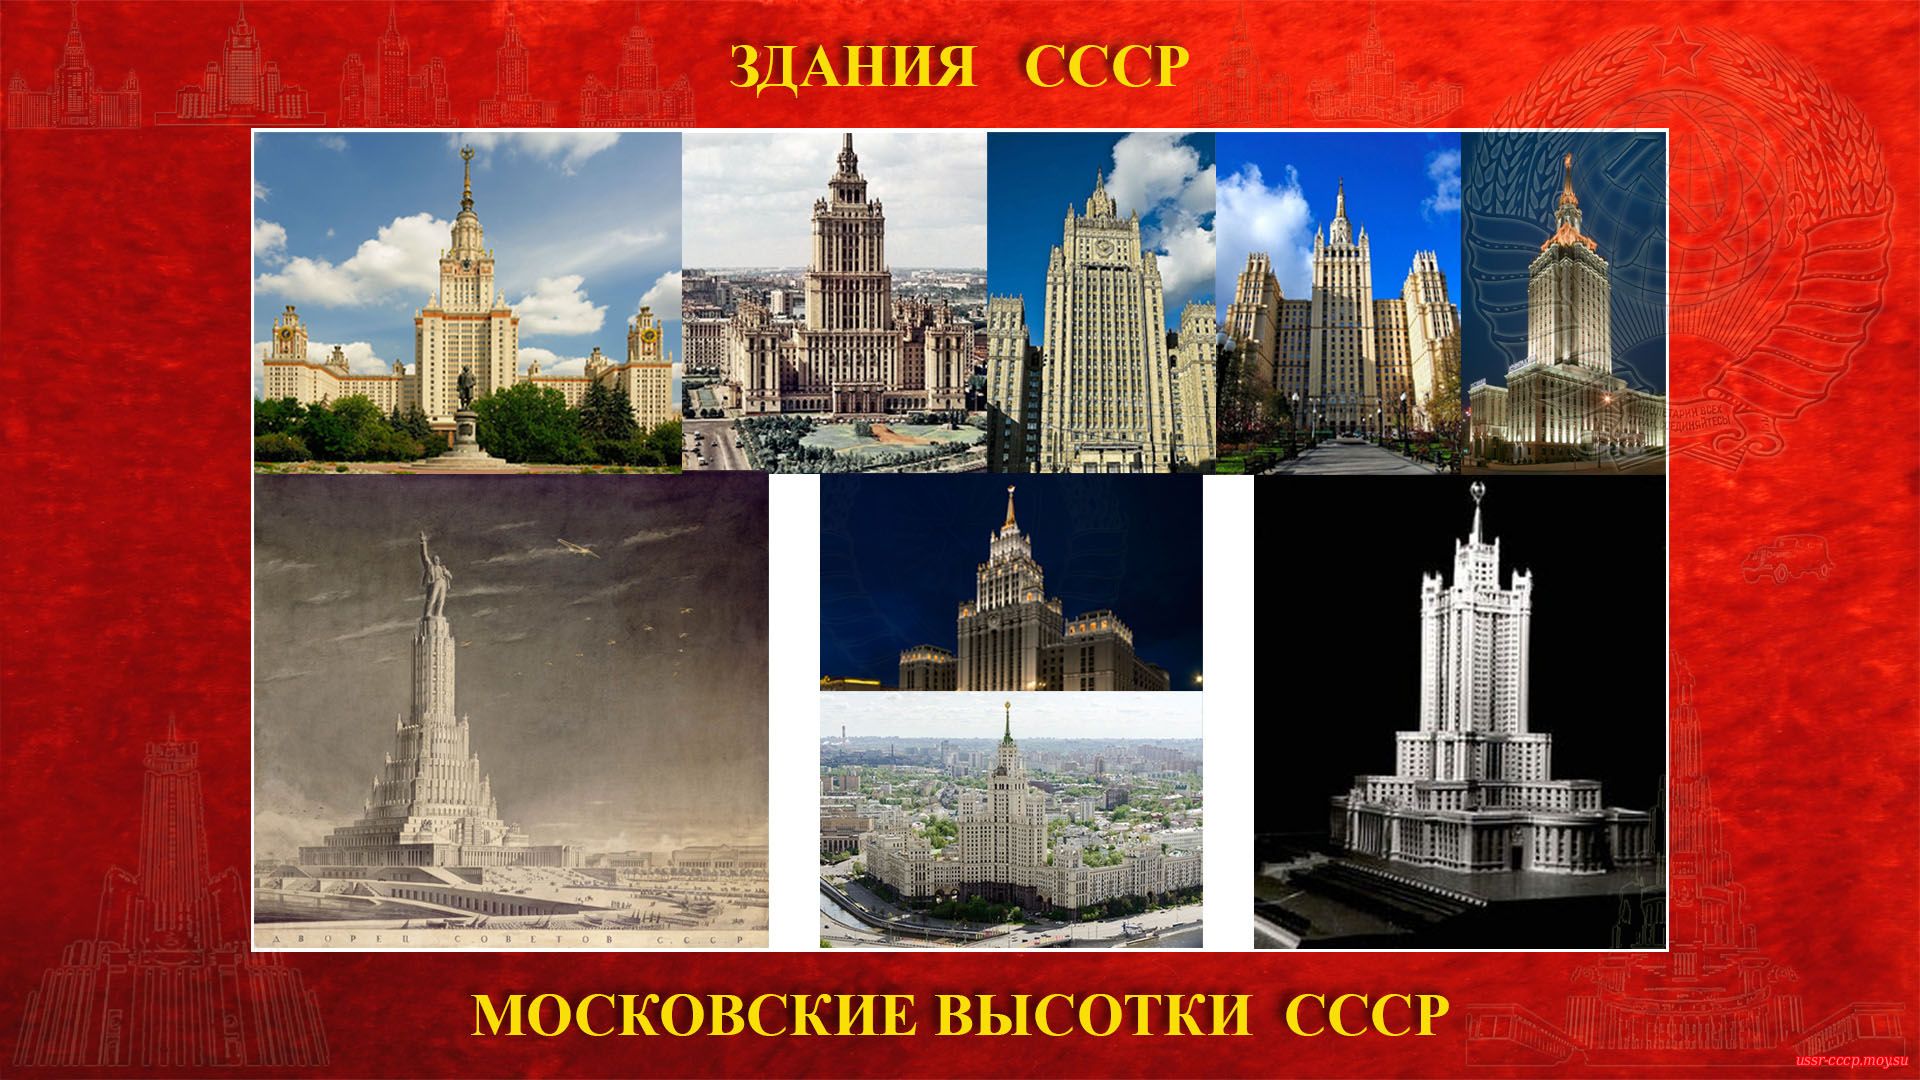 13 января 1947 года в Кремле И. В. Сталиным было подписано постановление о строительстве в Москве 8 многоэтажных зданий. 